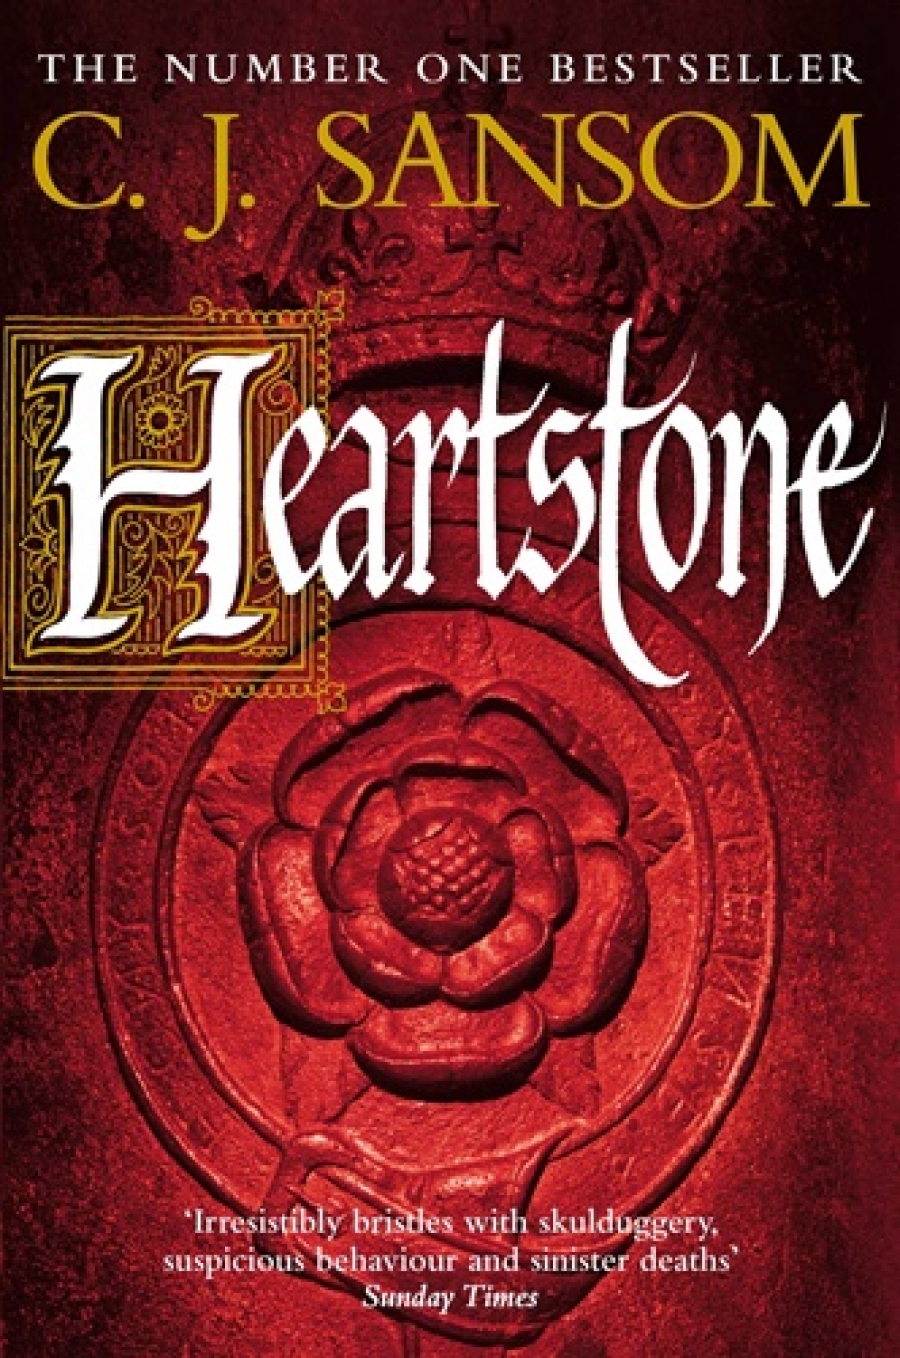 C. J., Sansom Heartstone   (No.1 UK bestseller) 